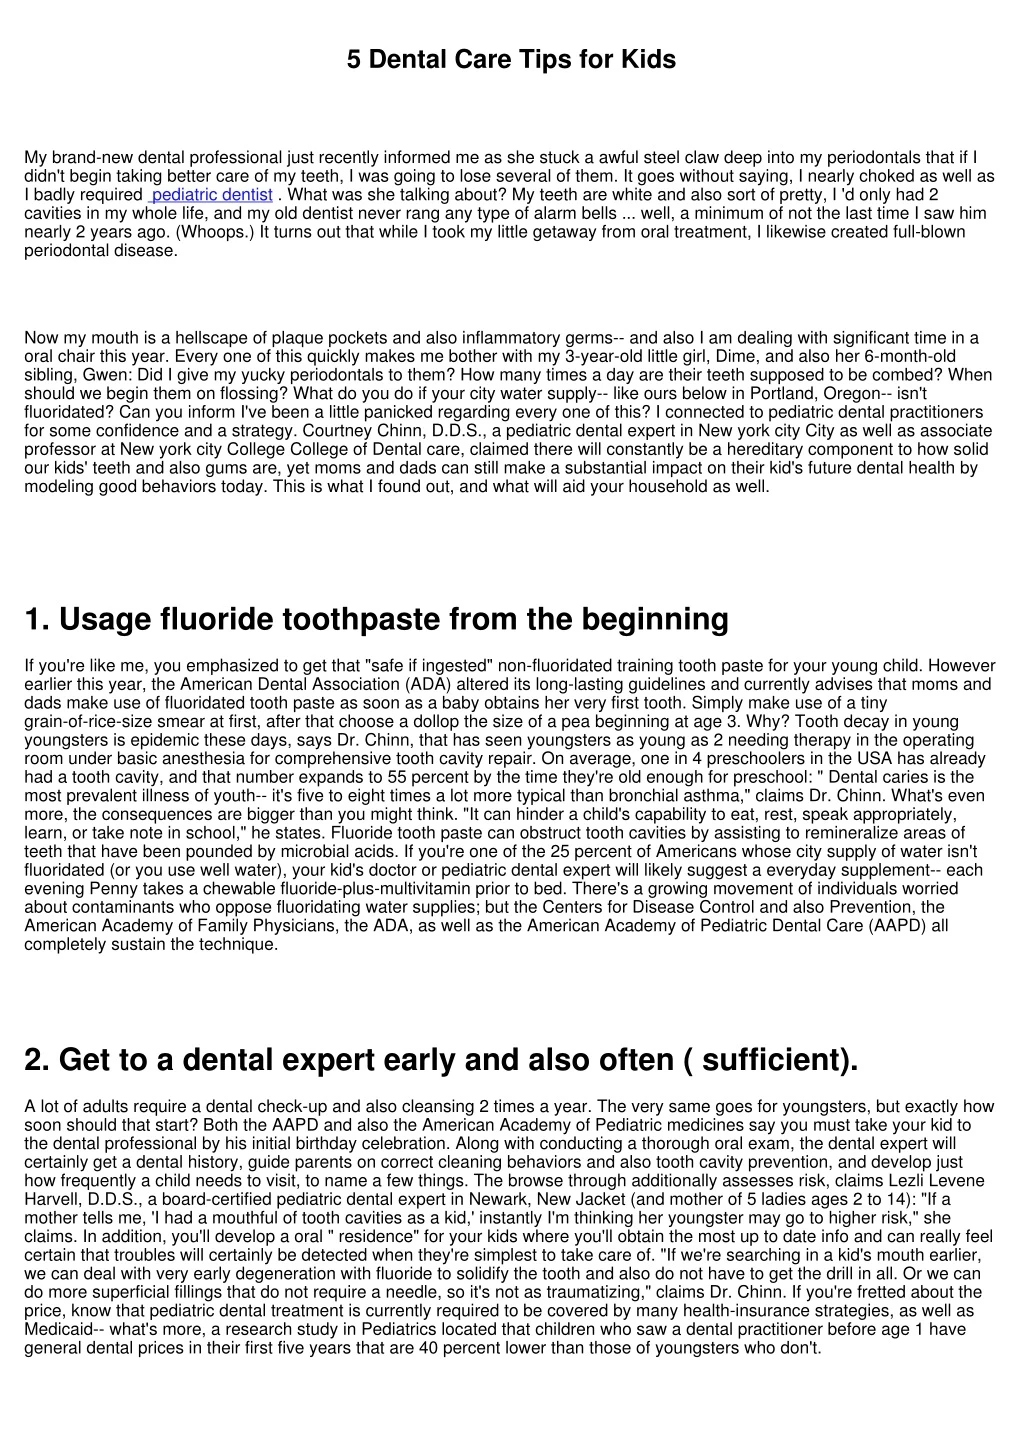 5 dental care tips for kids